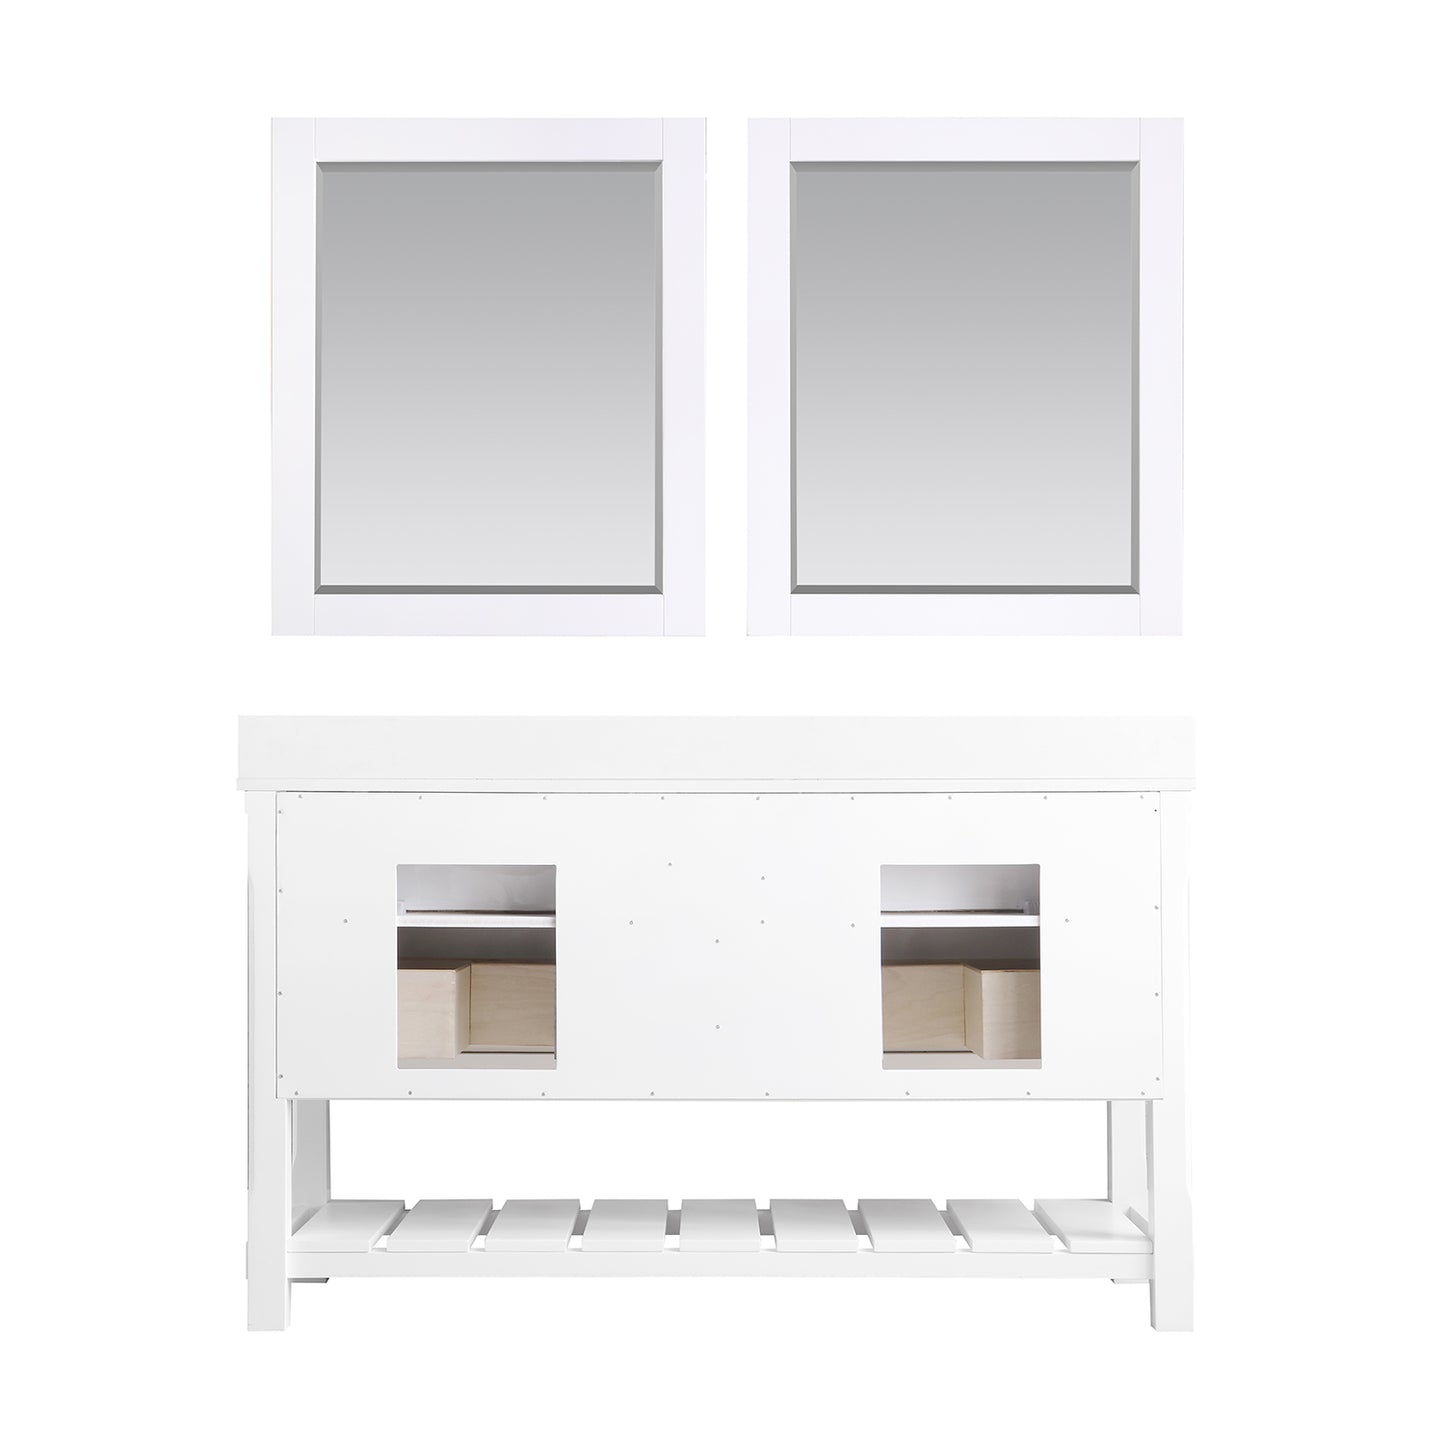 Georgia 60" Double Bathroom Vanity Set with Aosta White Composite Stone Top with White Farmhouse Basin- Altair Designs